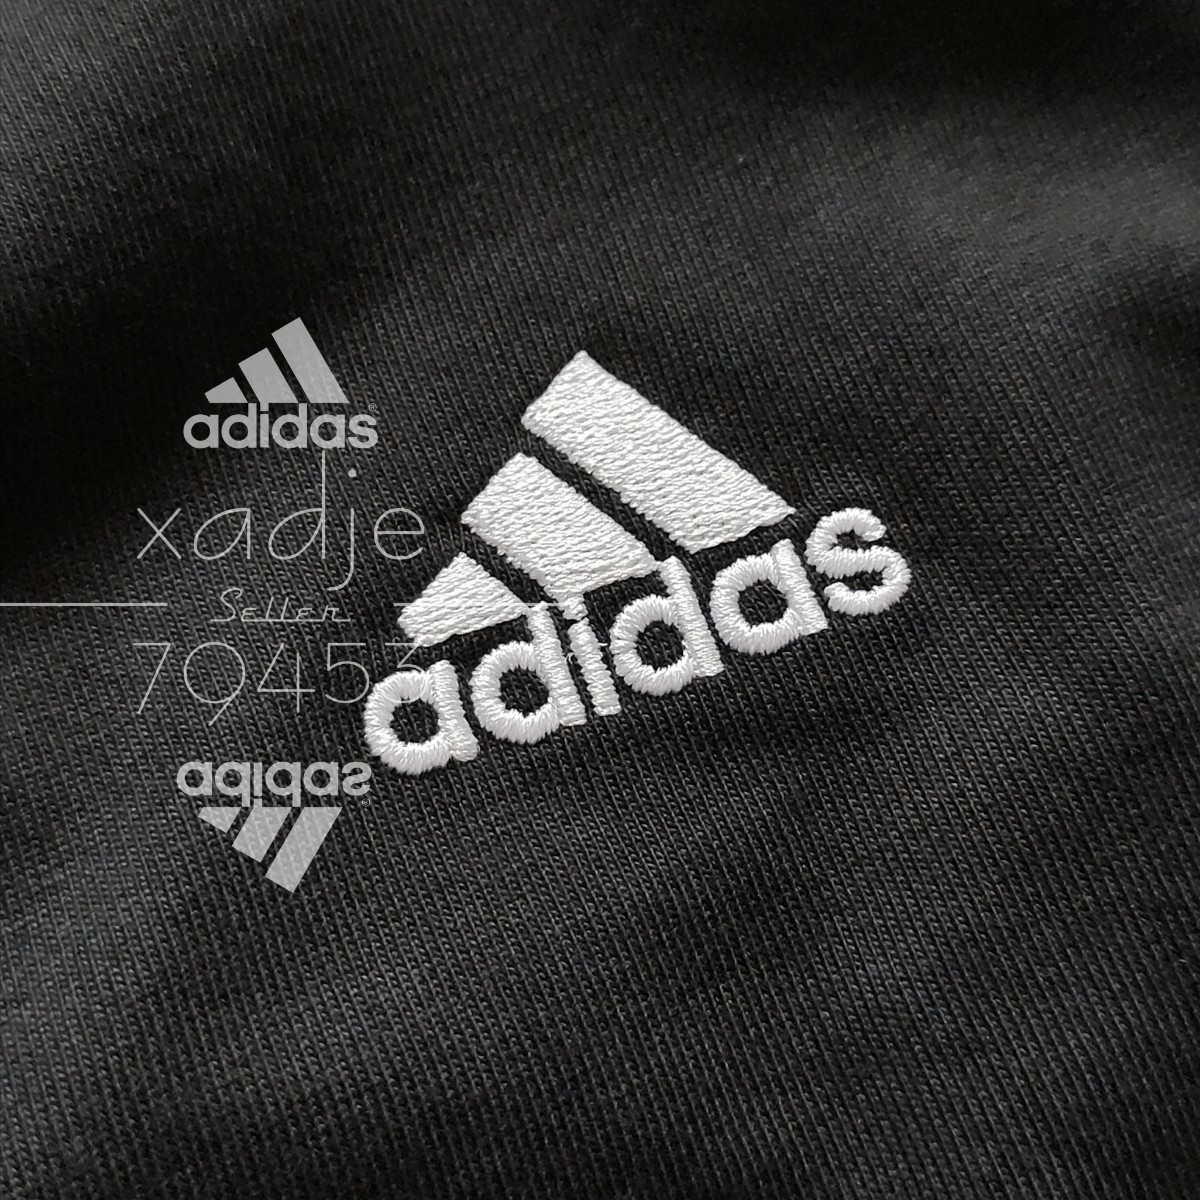 新品 正規品 adidas アディダス 2枚セット 長袖 ロンT プリント THREE STRIPES 黒 ブラック 白 ホワイト 3本ライン ロゴ 刺繍 厚手 XL_画像8